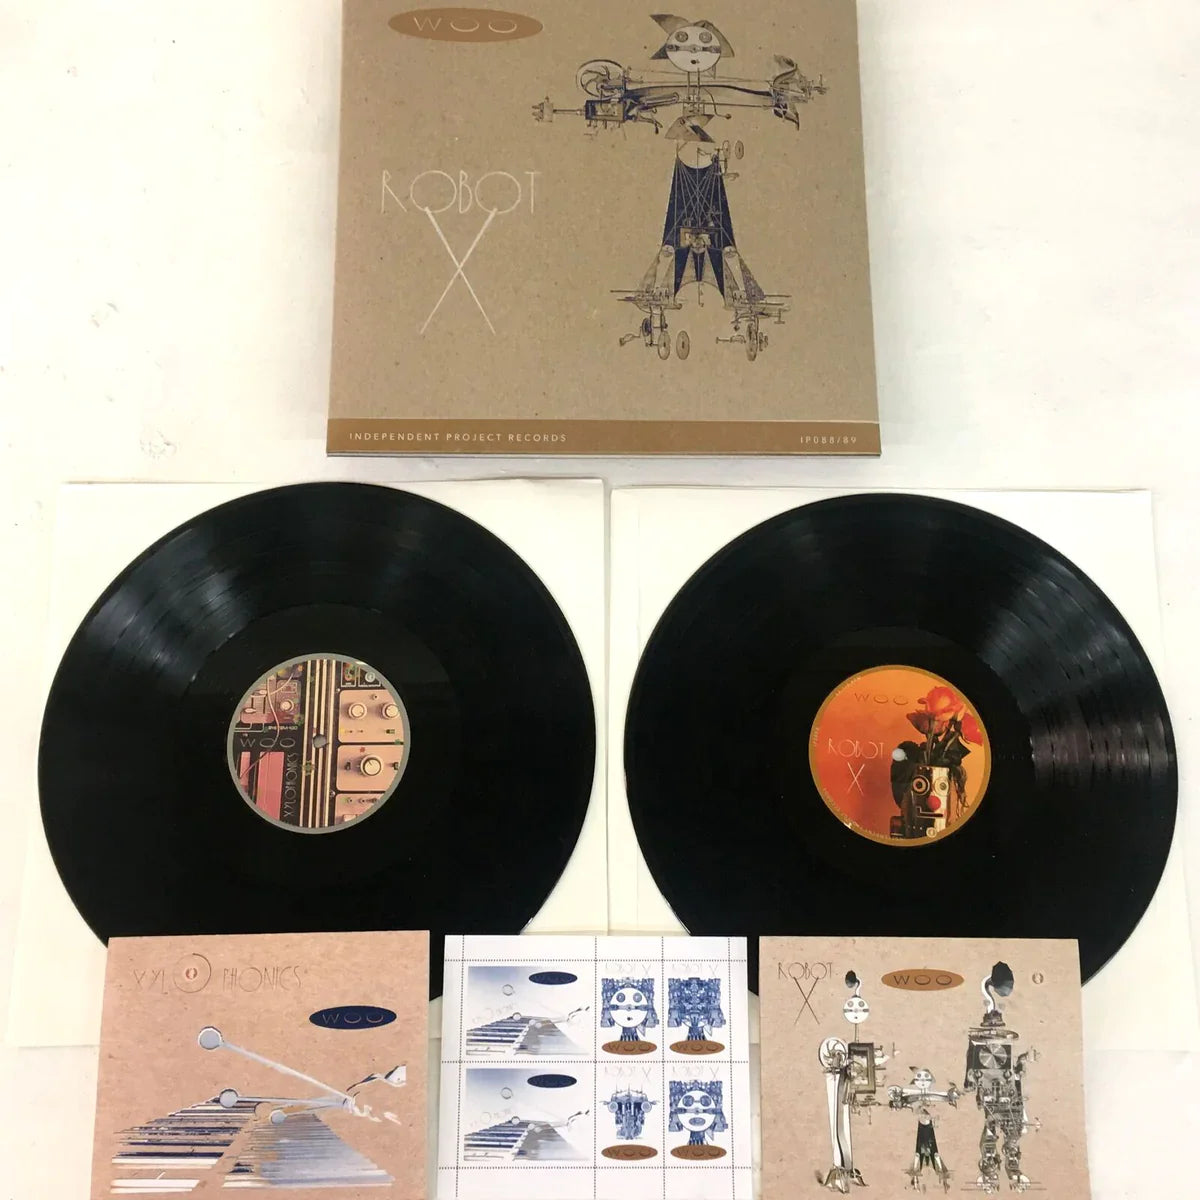 Woo - Xylophonics + Robot X [Clear Vinyl]